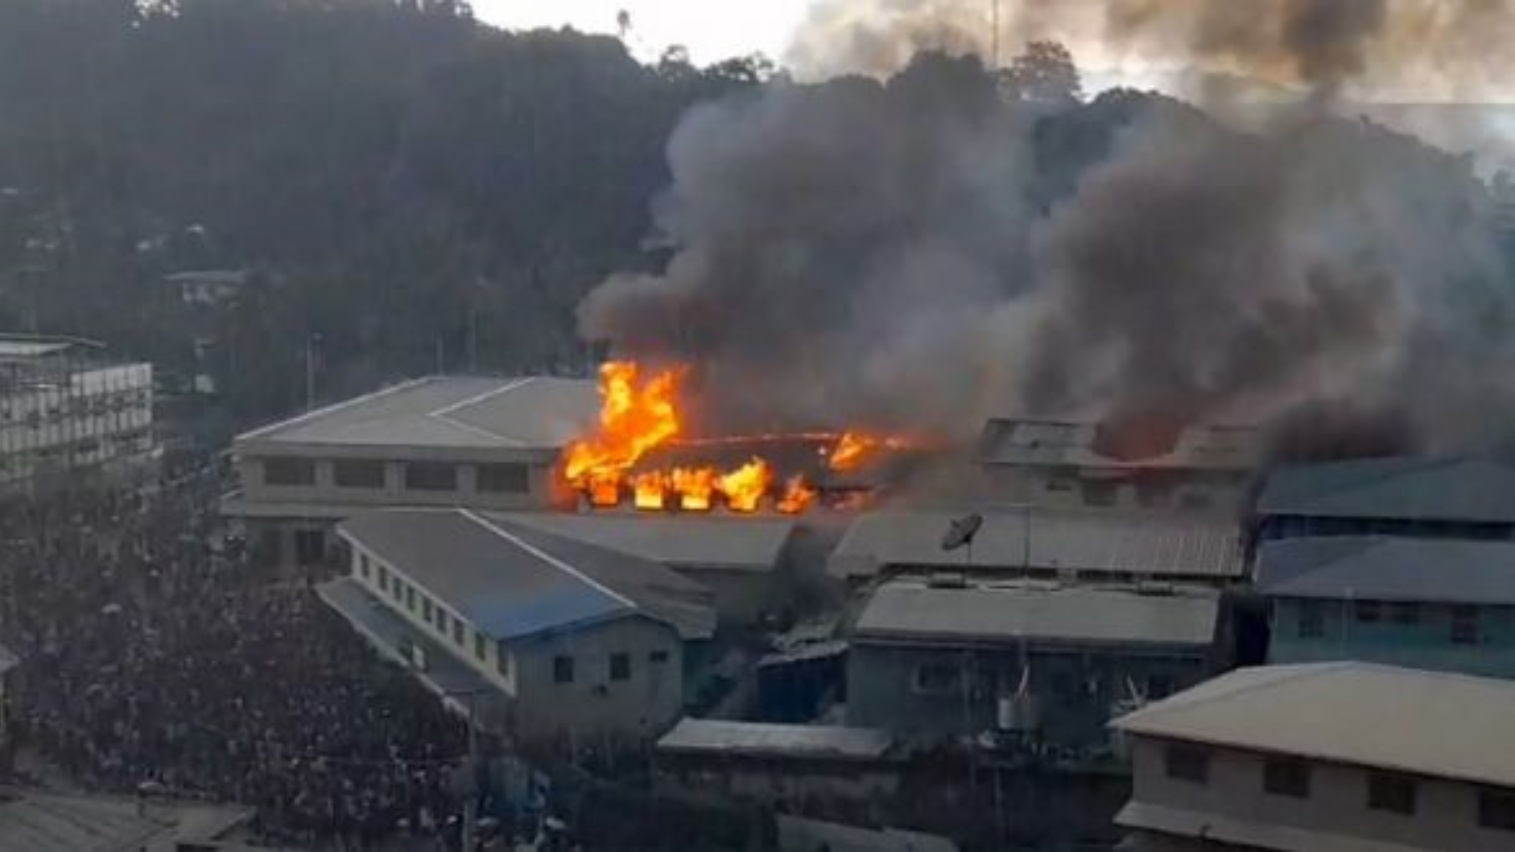 النيران تشتعل في أجزاء من الحي الصيني في هونيارا بجزر سليمان، حيث أضرم مثيرو الشغب النار في مبان في العاصمة في اليوم الثالث من الاحتجاجات المناهضة للحكومة.